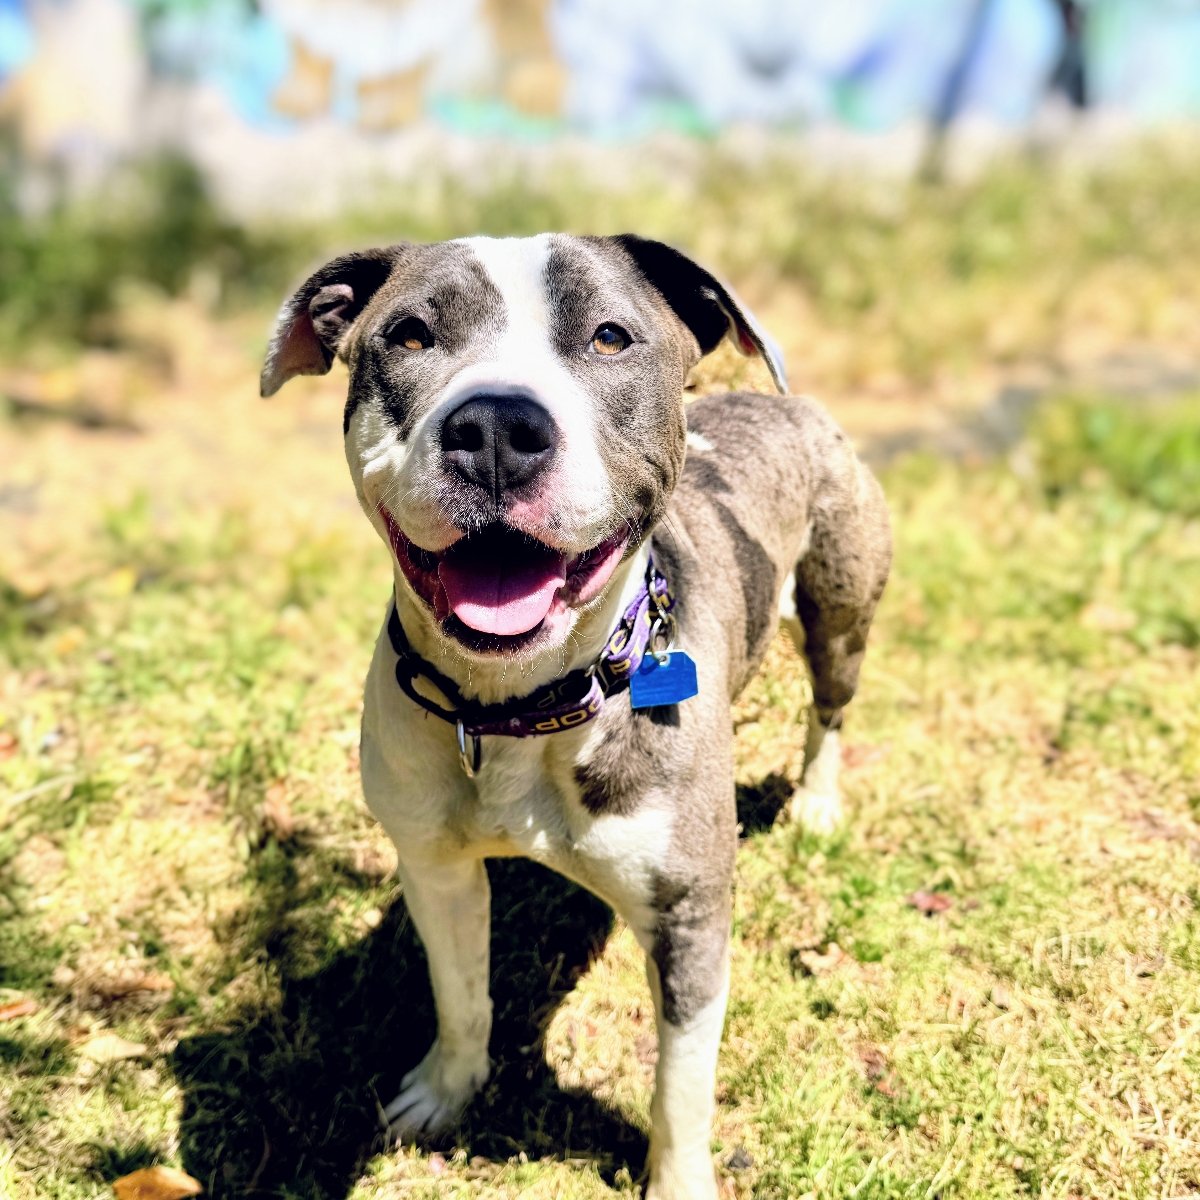 adoptable Dog in Oakland, CA named Hinata